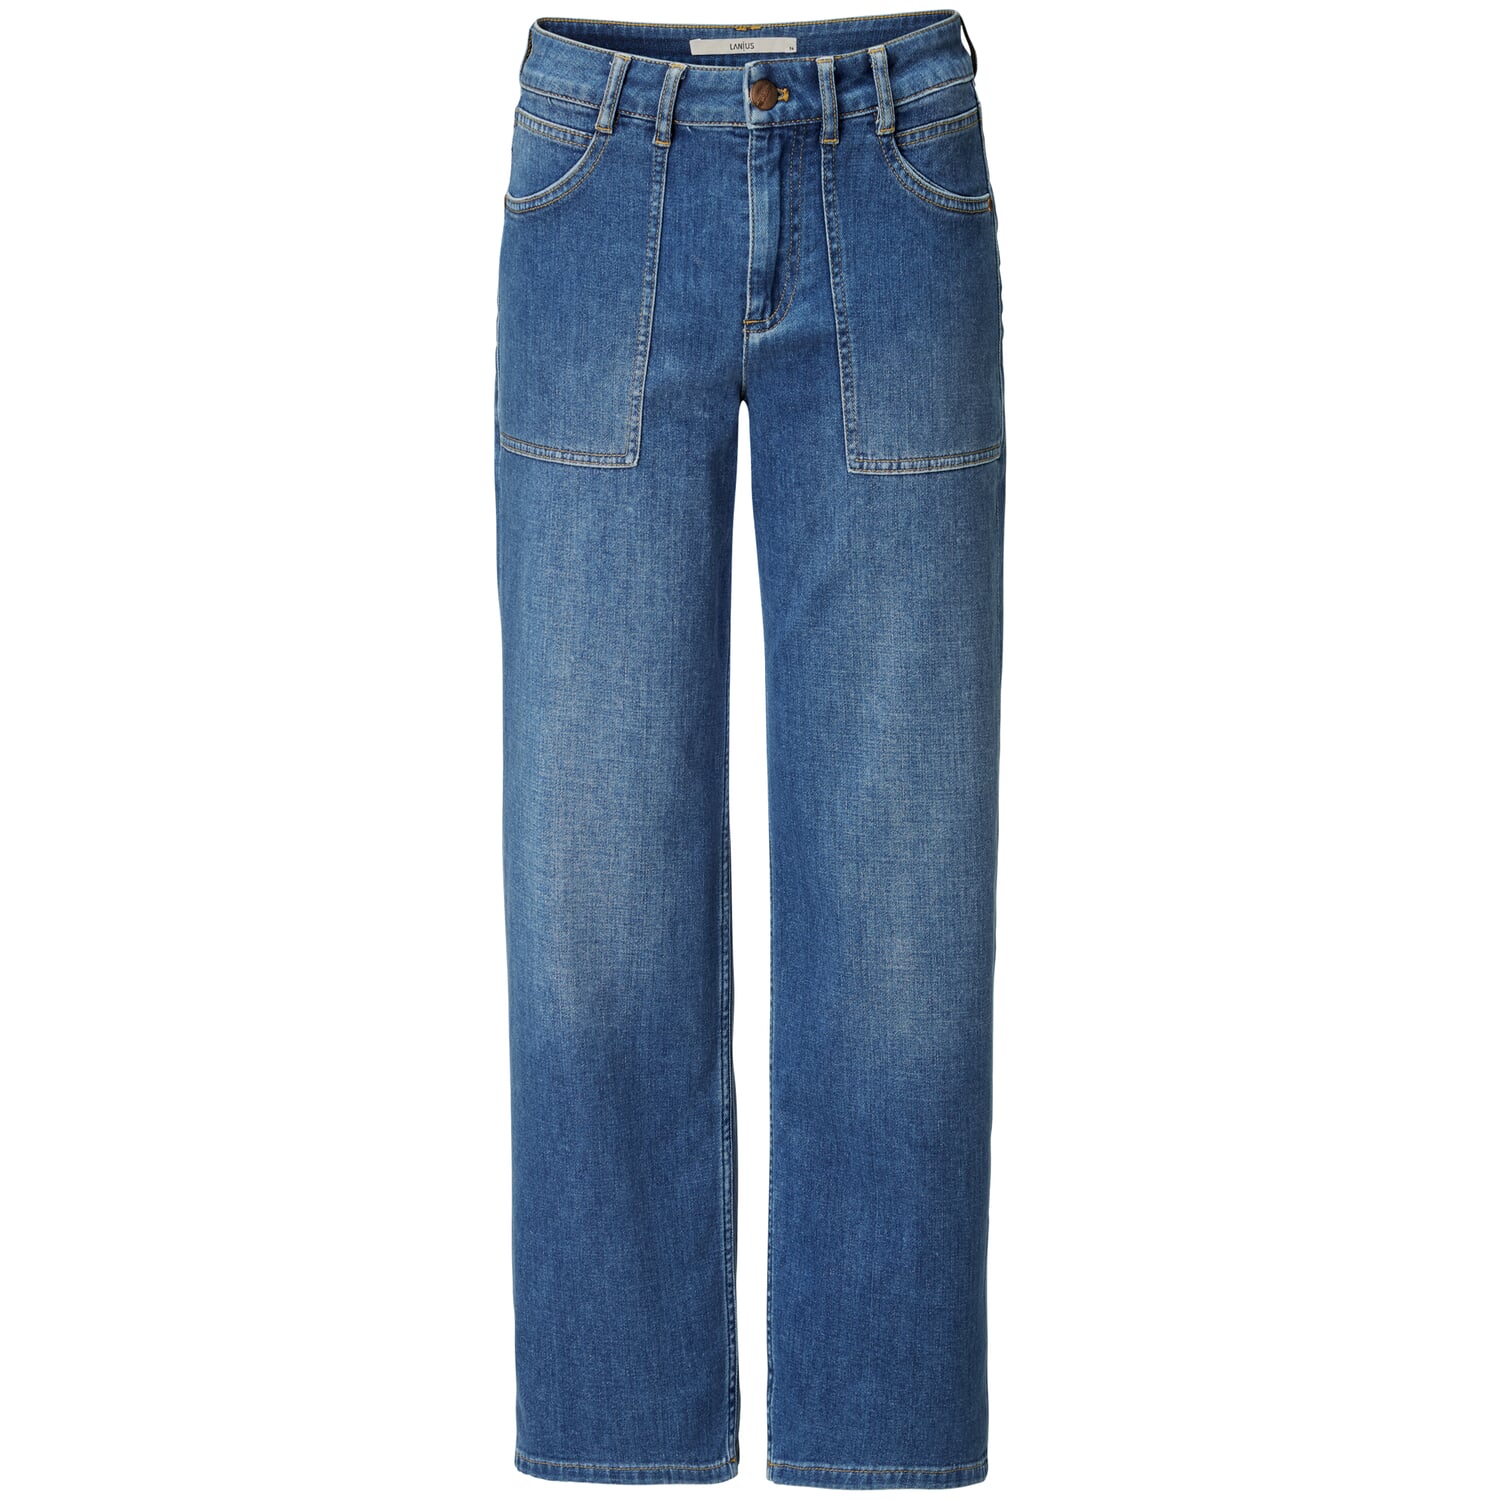 https://assets.manufactum.de/p/209/209360/209360_01.jpg/ladies-jeans-patch-pockets.jpg?profile=pdsmain_1500